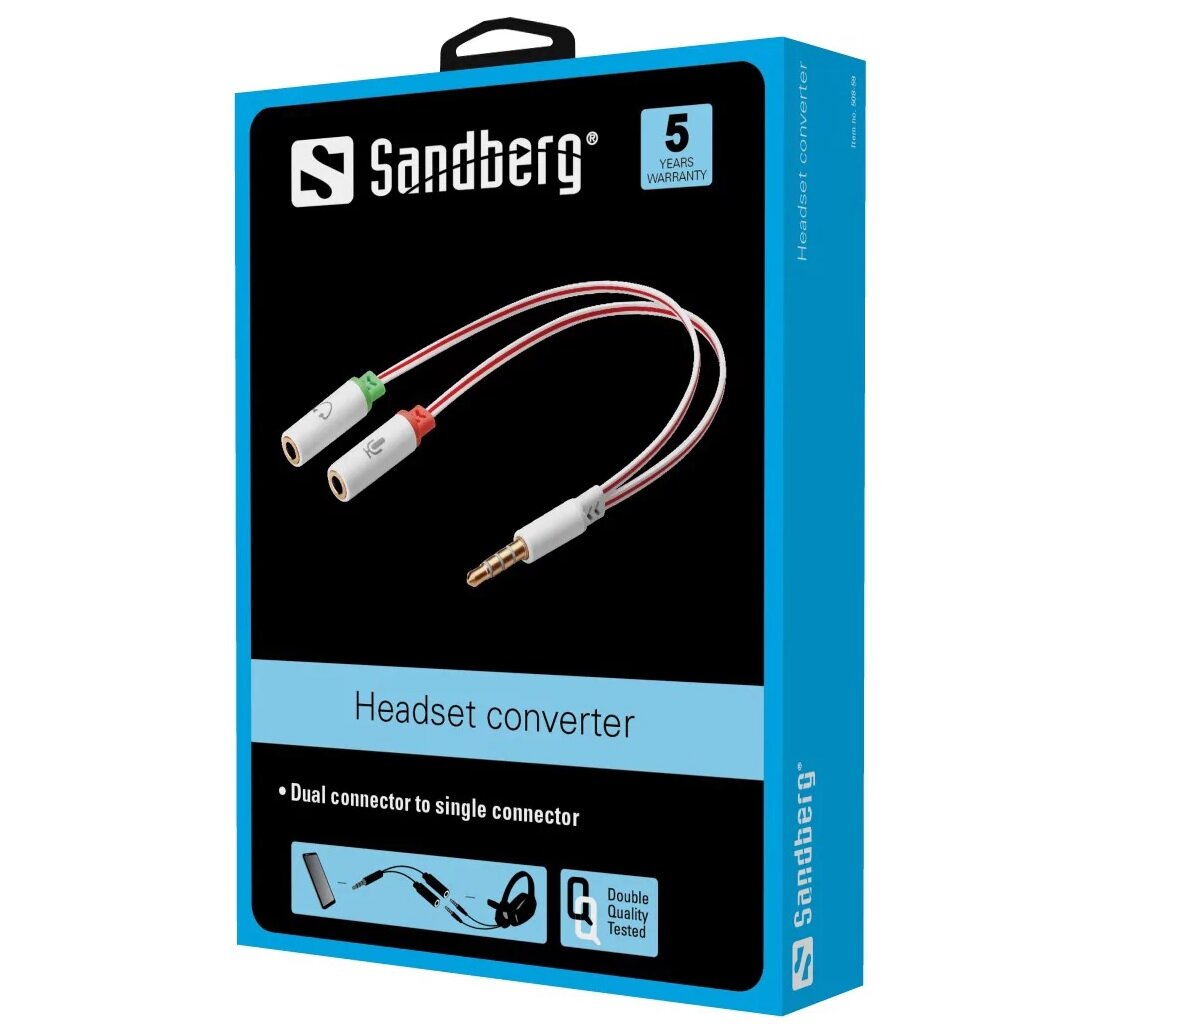 Adapter Sandberg Headset converter biały w opakowaniu po skosie na białym tle